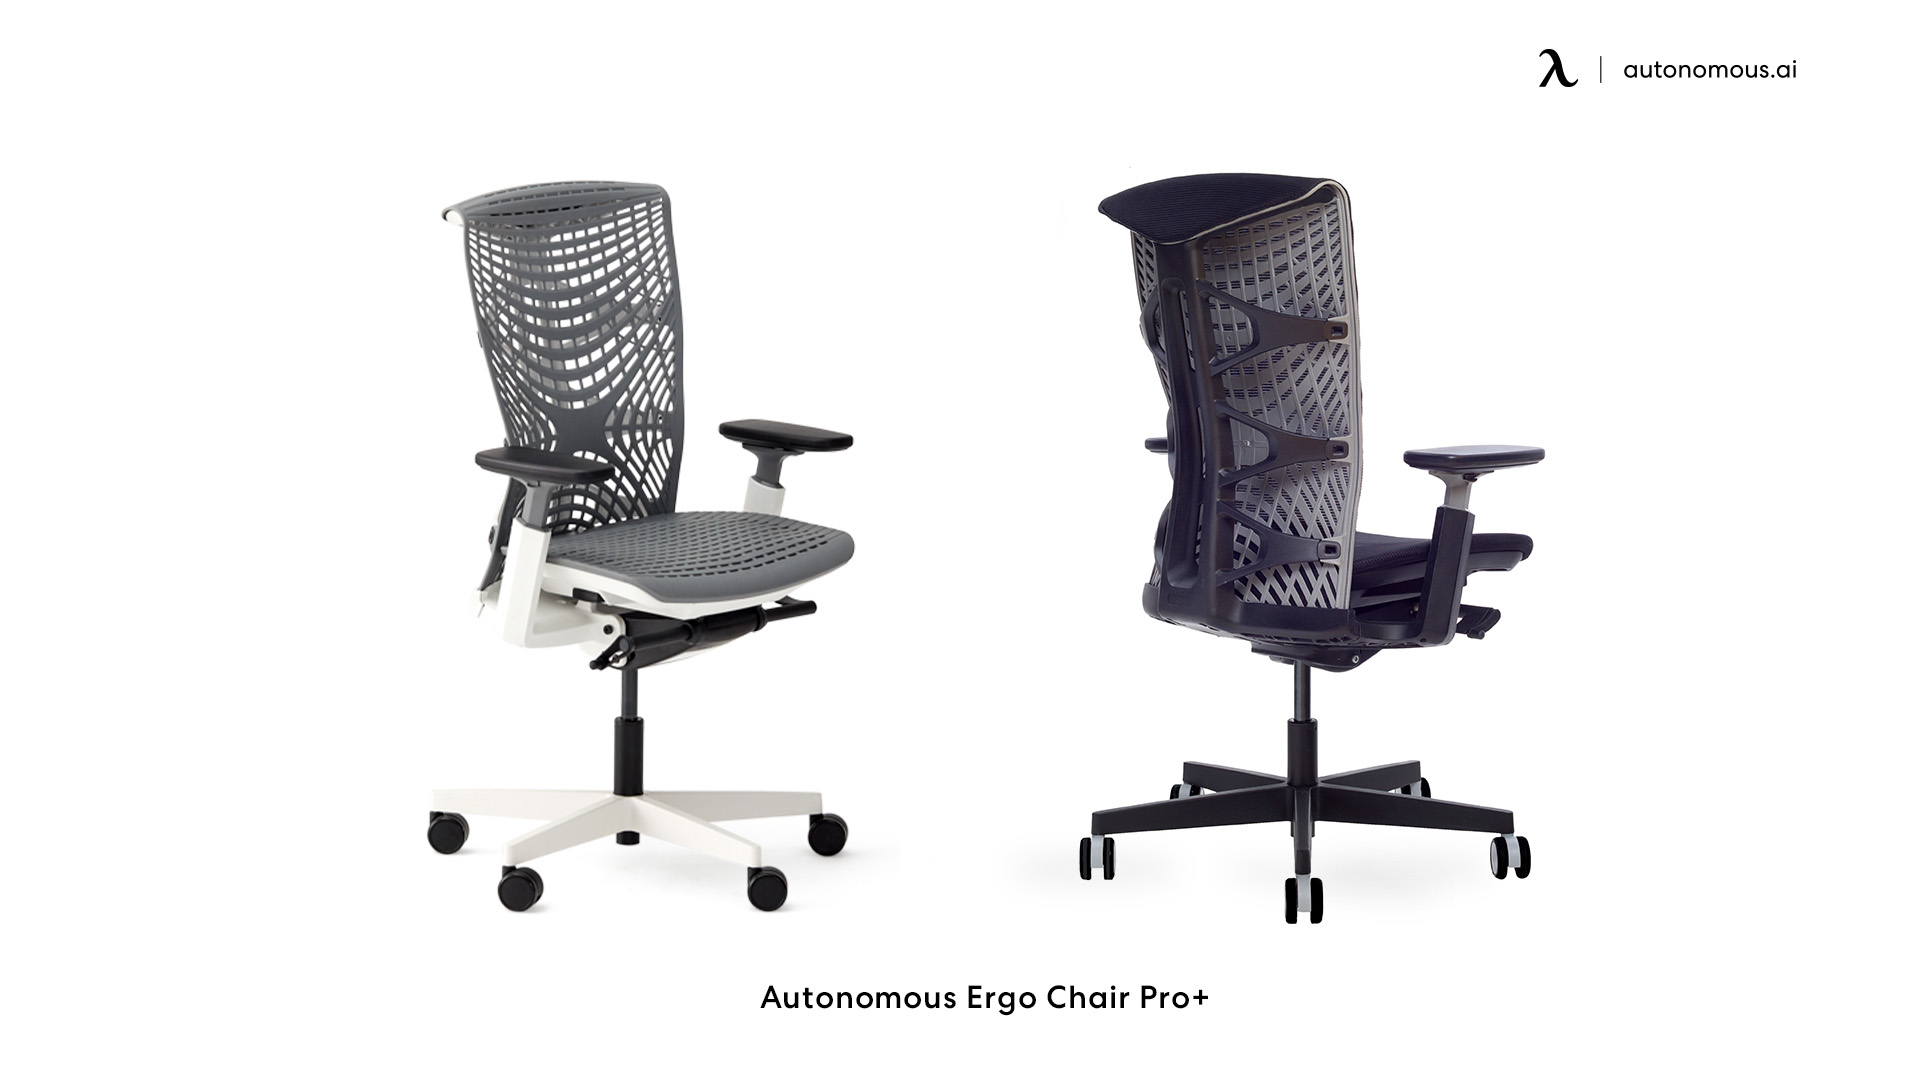 ErgoChair Pro+ modern office chair